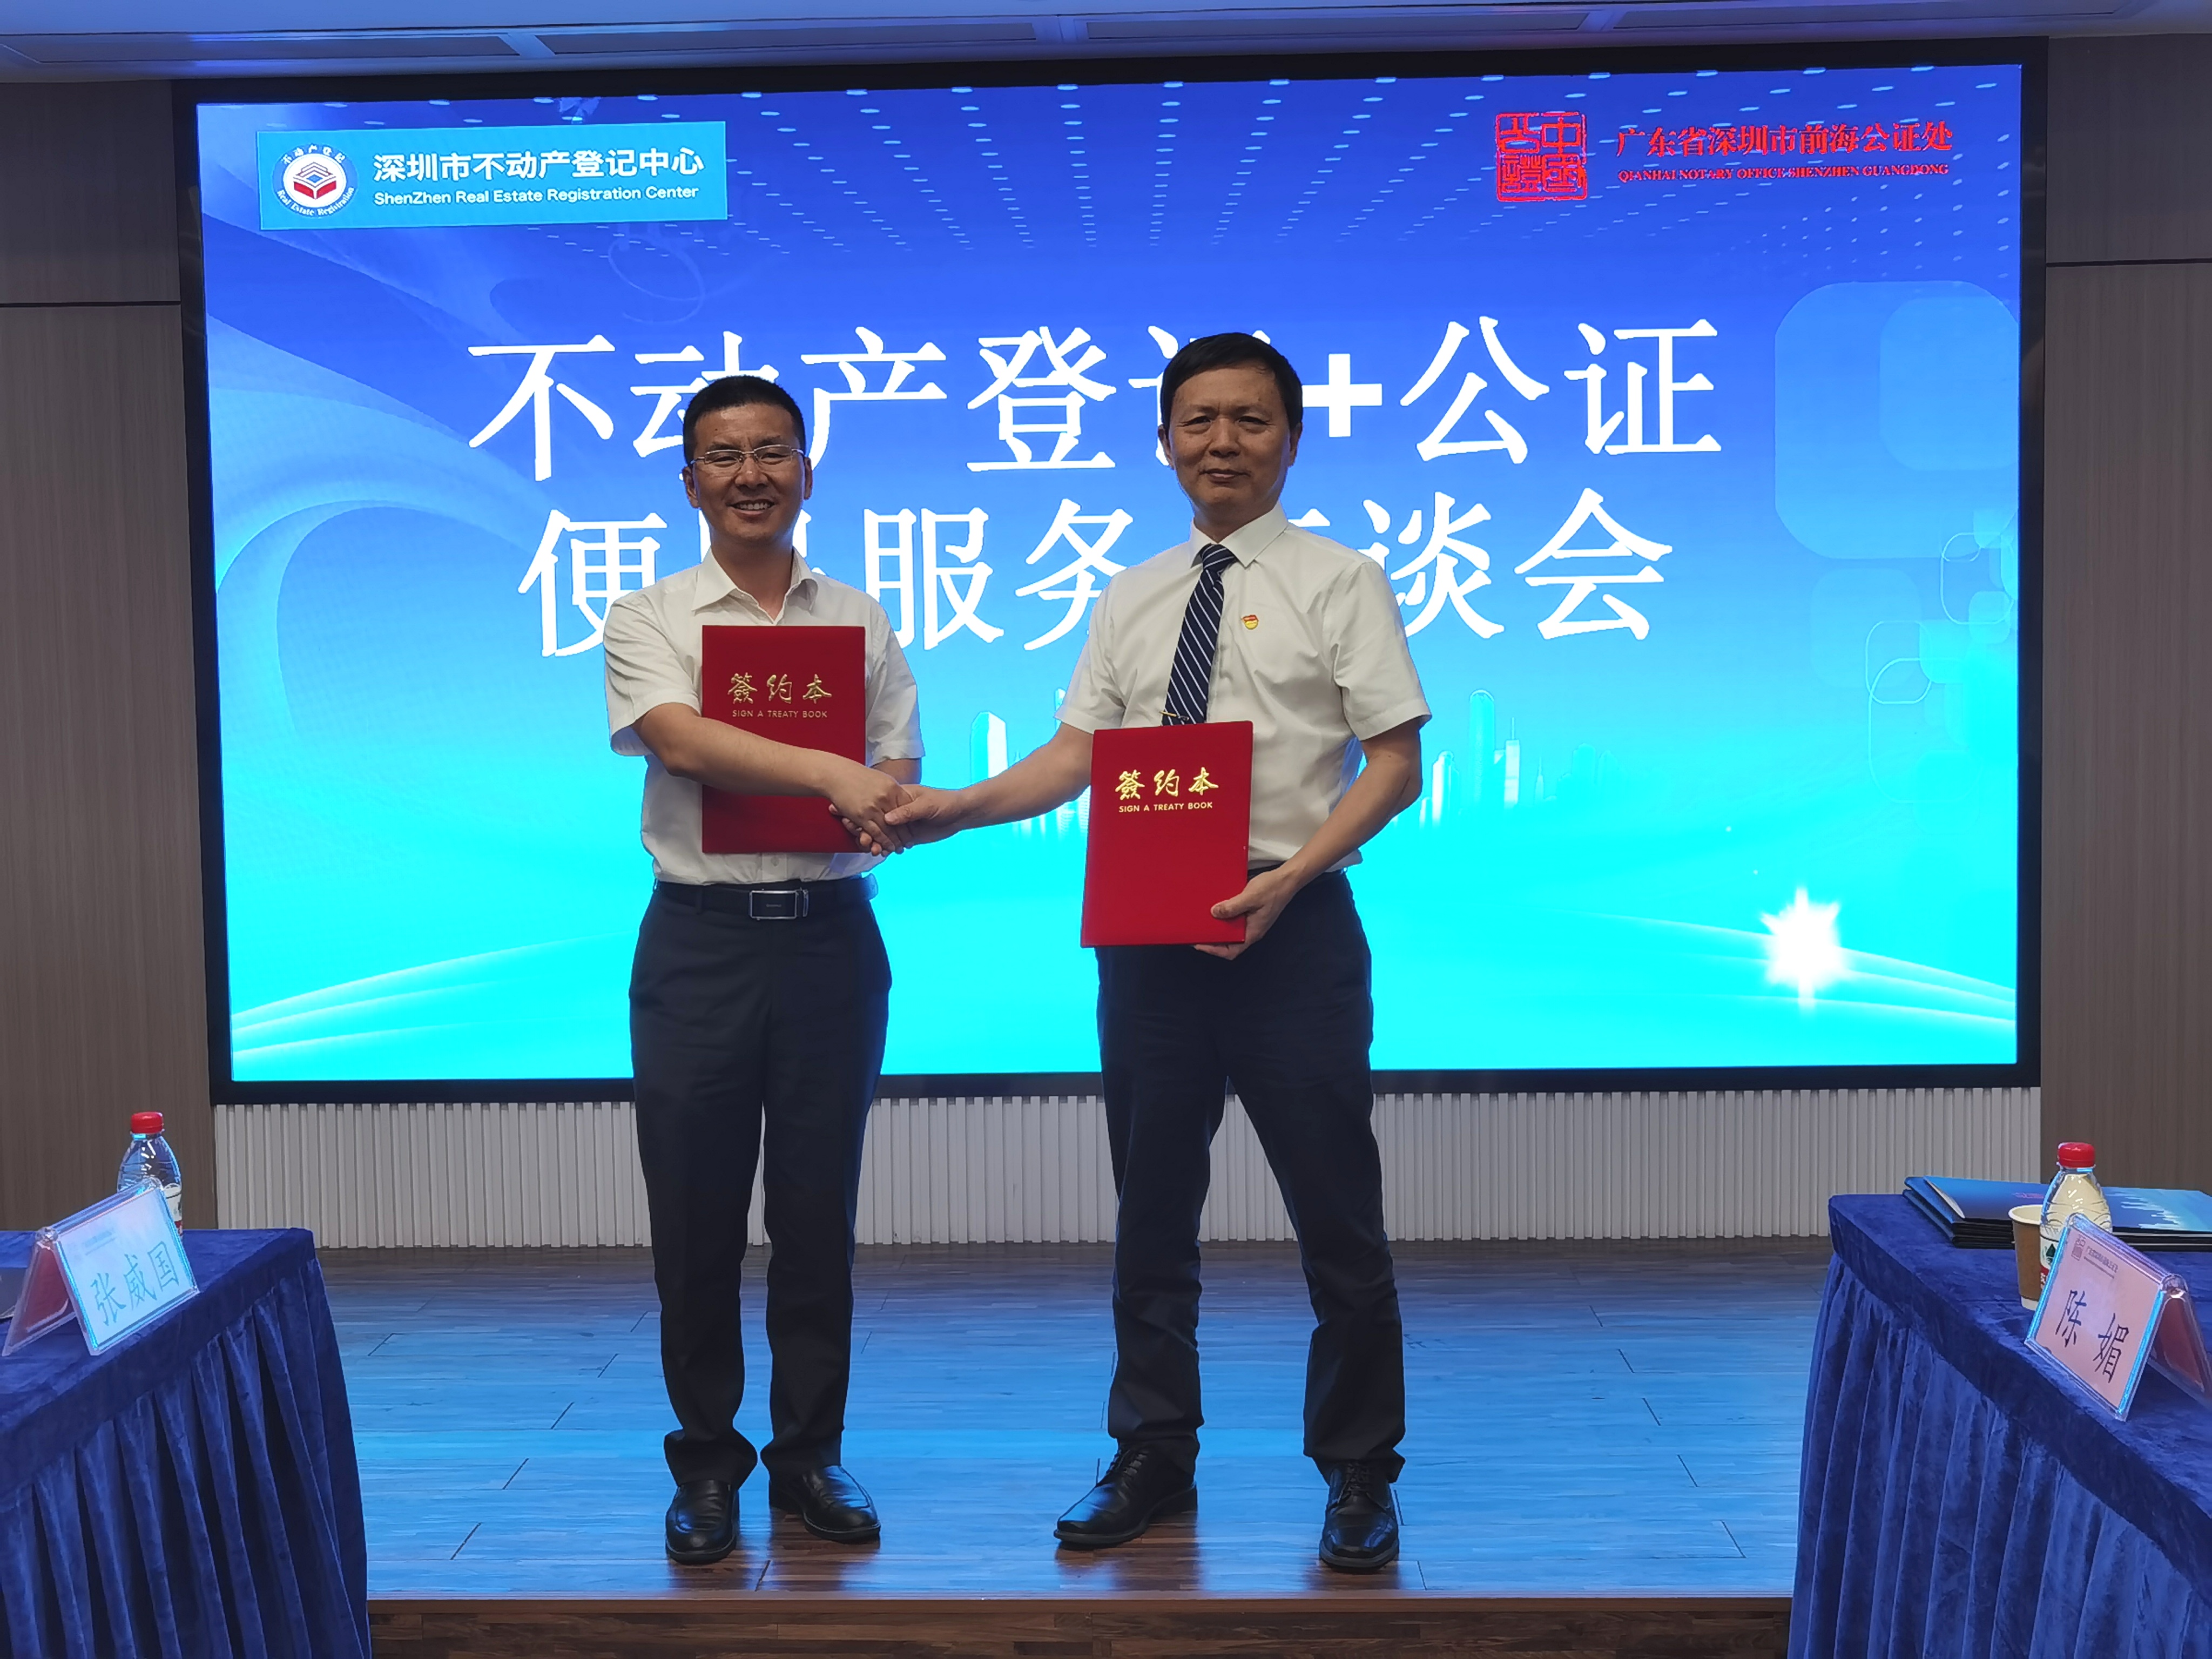 深圳设立首个“不动产登记+公证”便民服务窗口